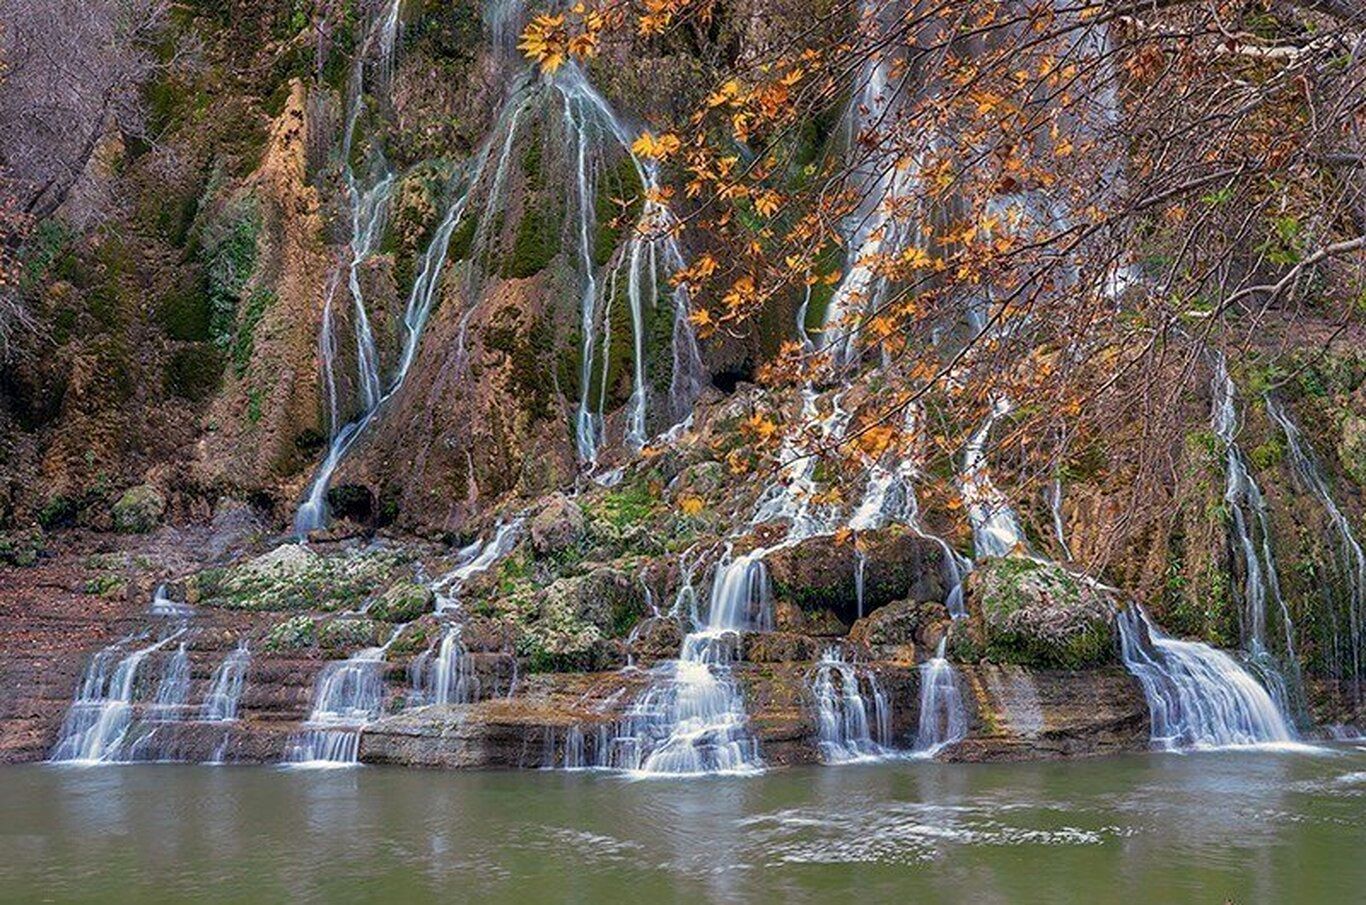 ۱۰ آبشار زیبا در اطراف تهران؛ آبشارگردی در اردیبهشت را از دست ندهید